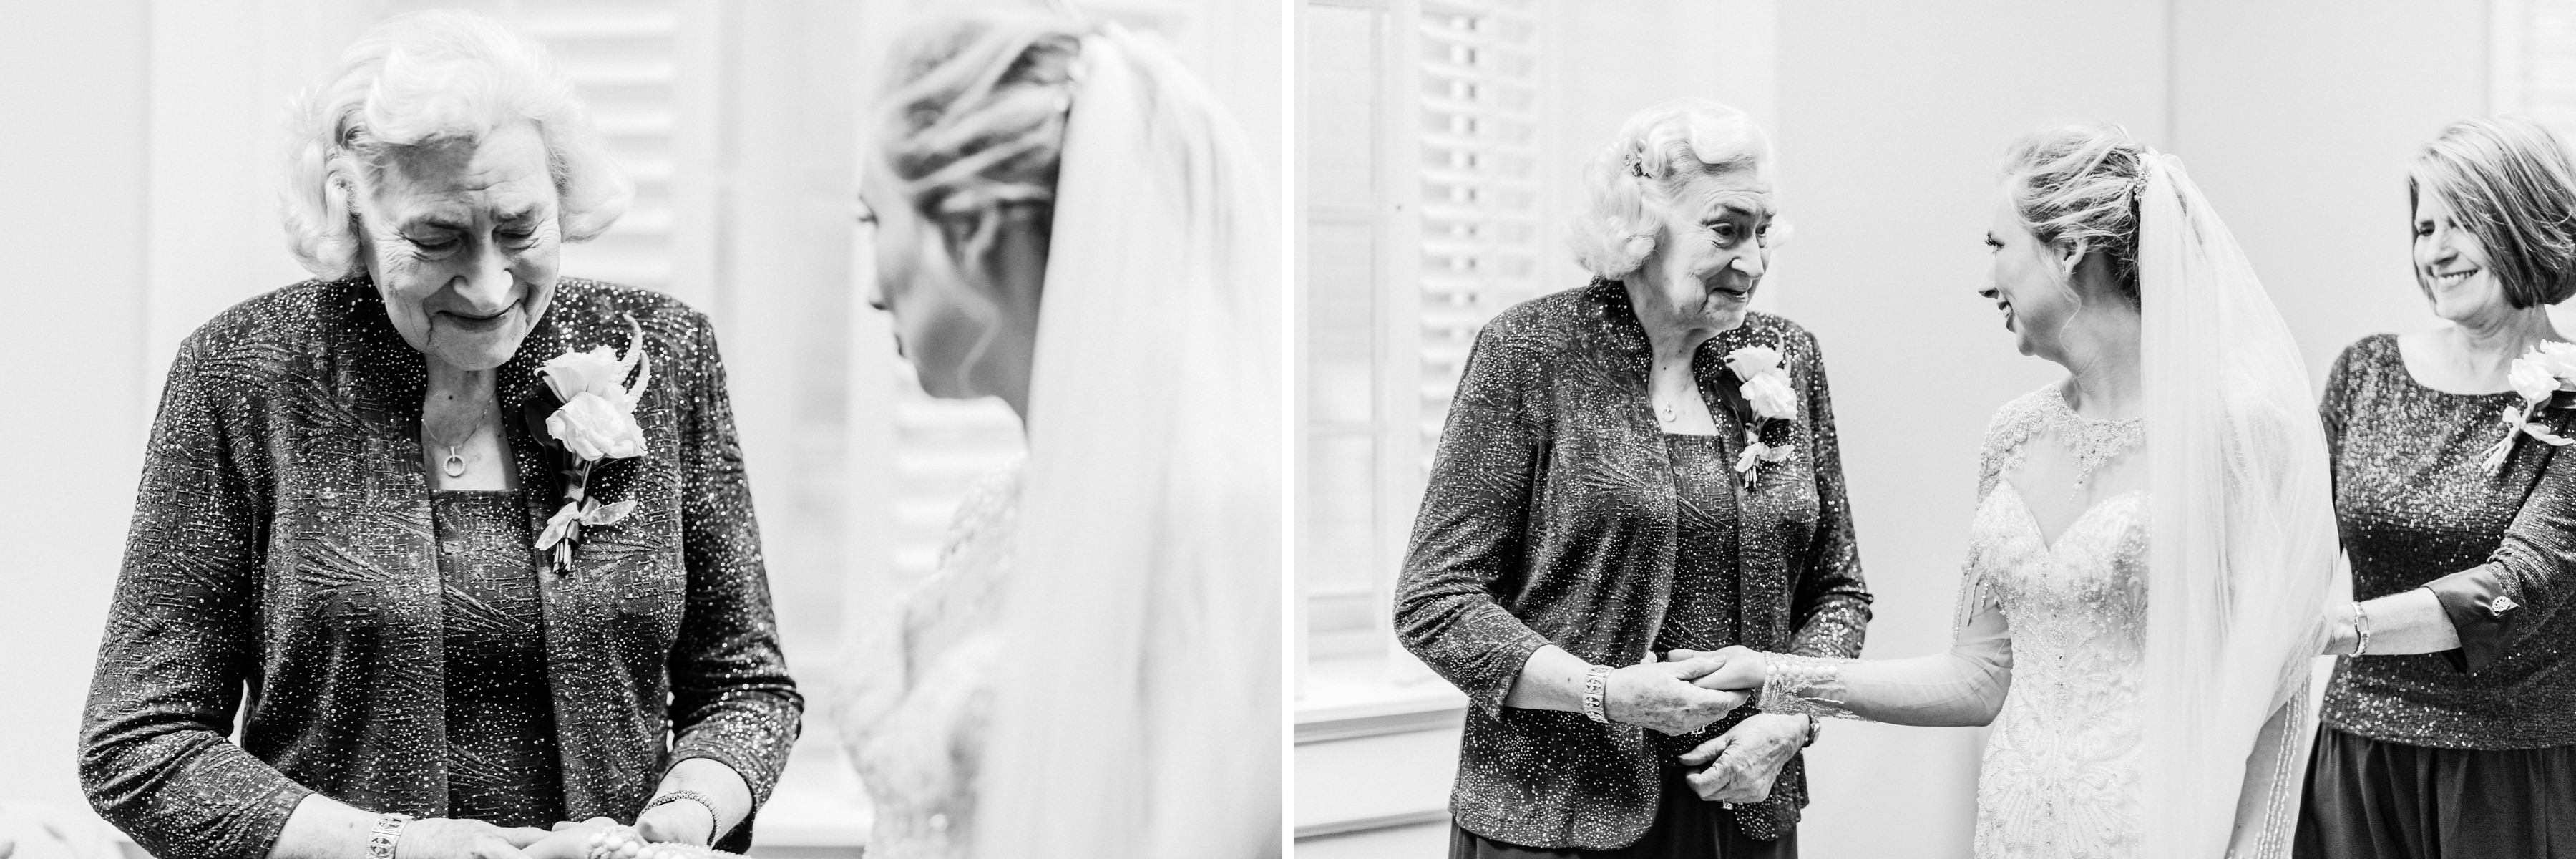 OAKLEY_WEDDING_MONTGOMERY_ALABAMA_WEDDING_PHOTOGRAPHY_16